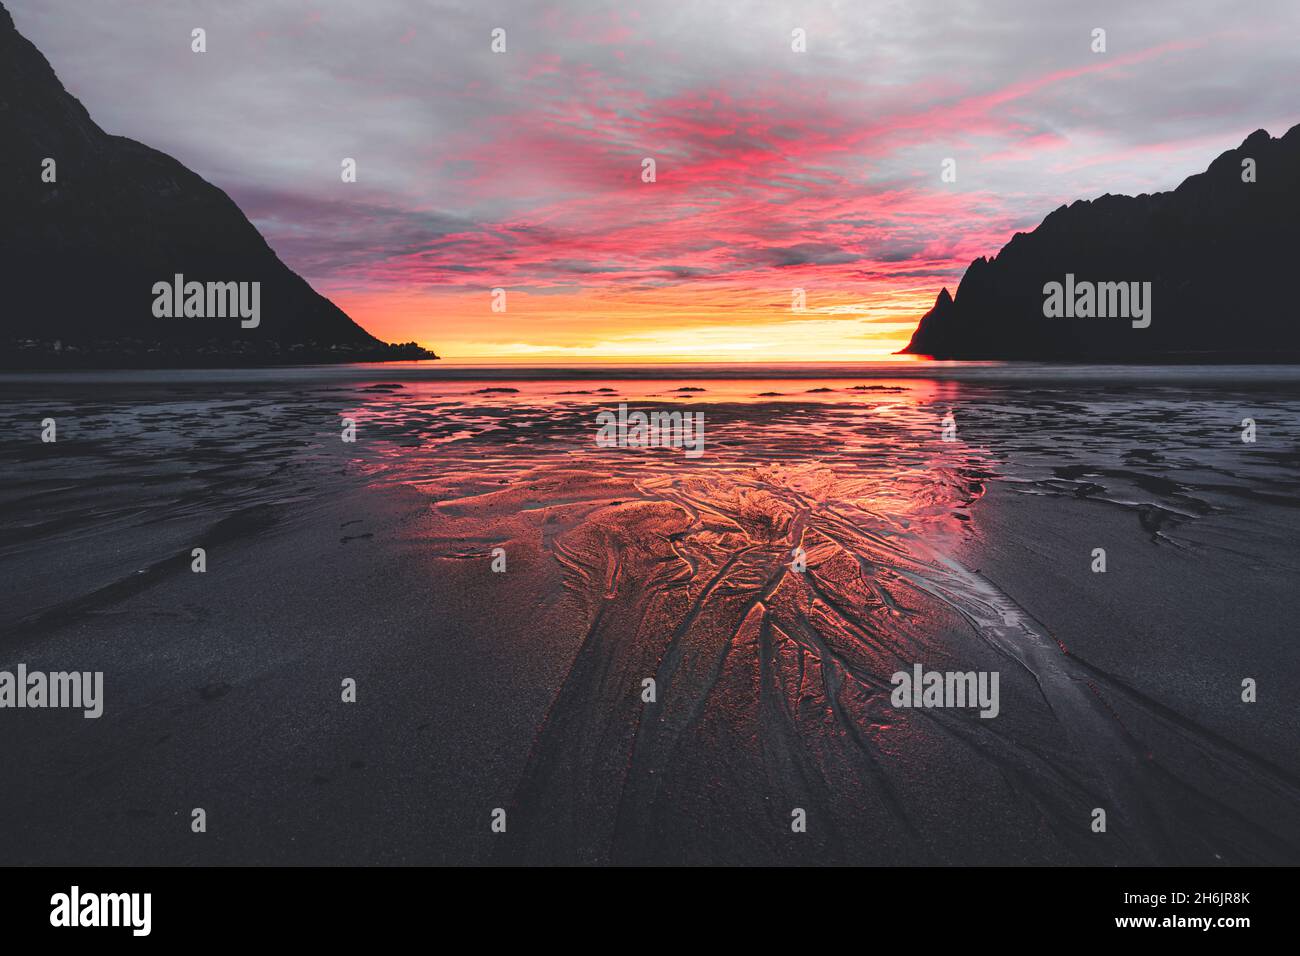 Plage vide d'Ersfjord contre le ciel nuageux et le soleil de minuit, île de Senja, comté de Troms, Norvège, Scandinavie,Europe Banque D'Images